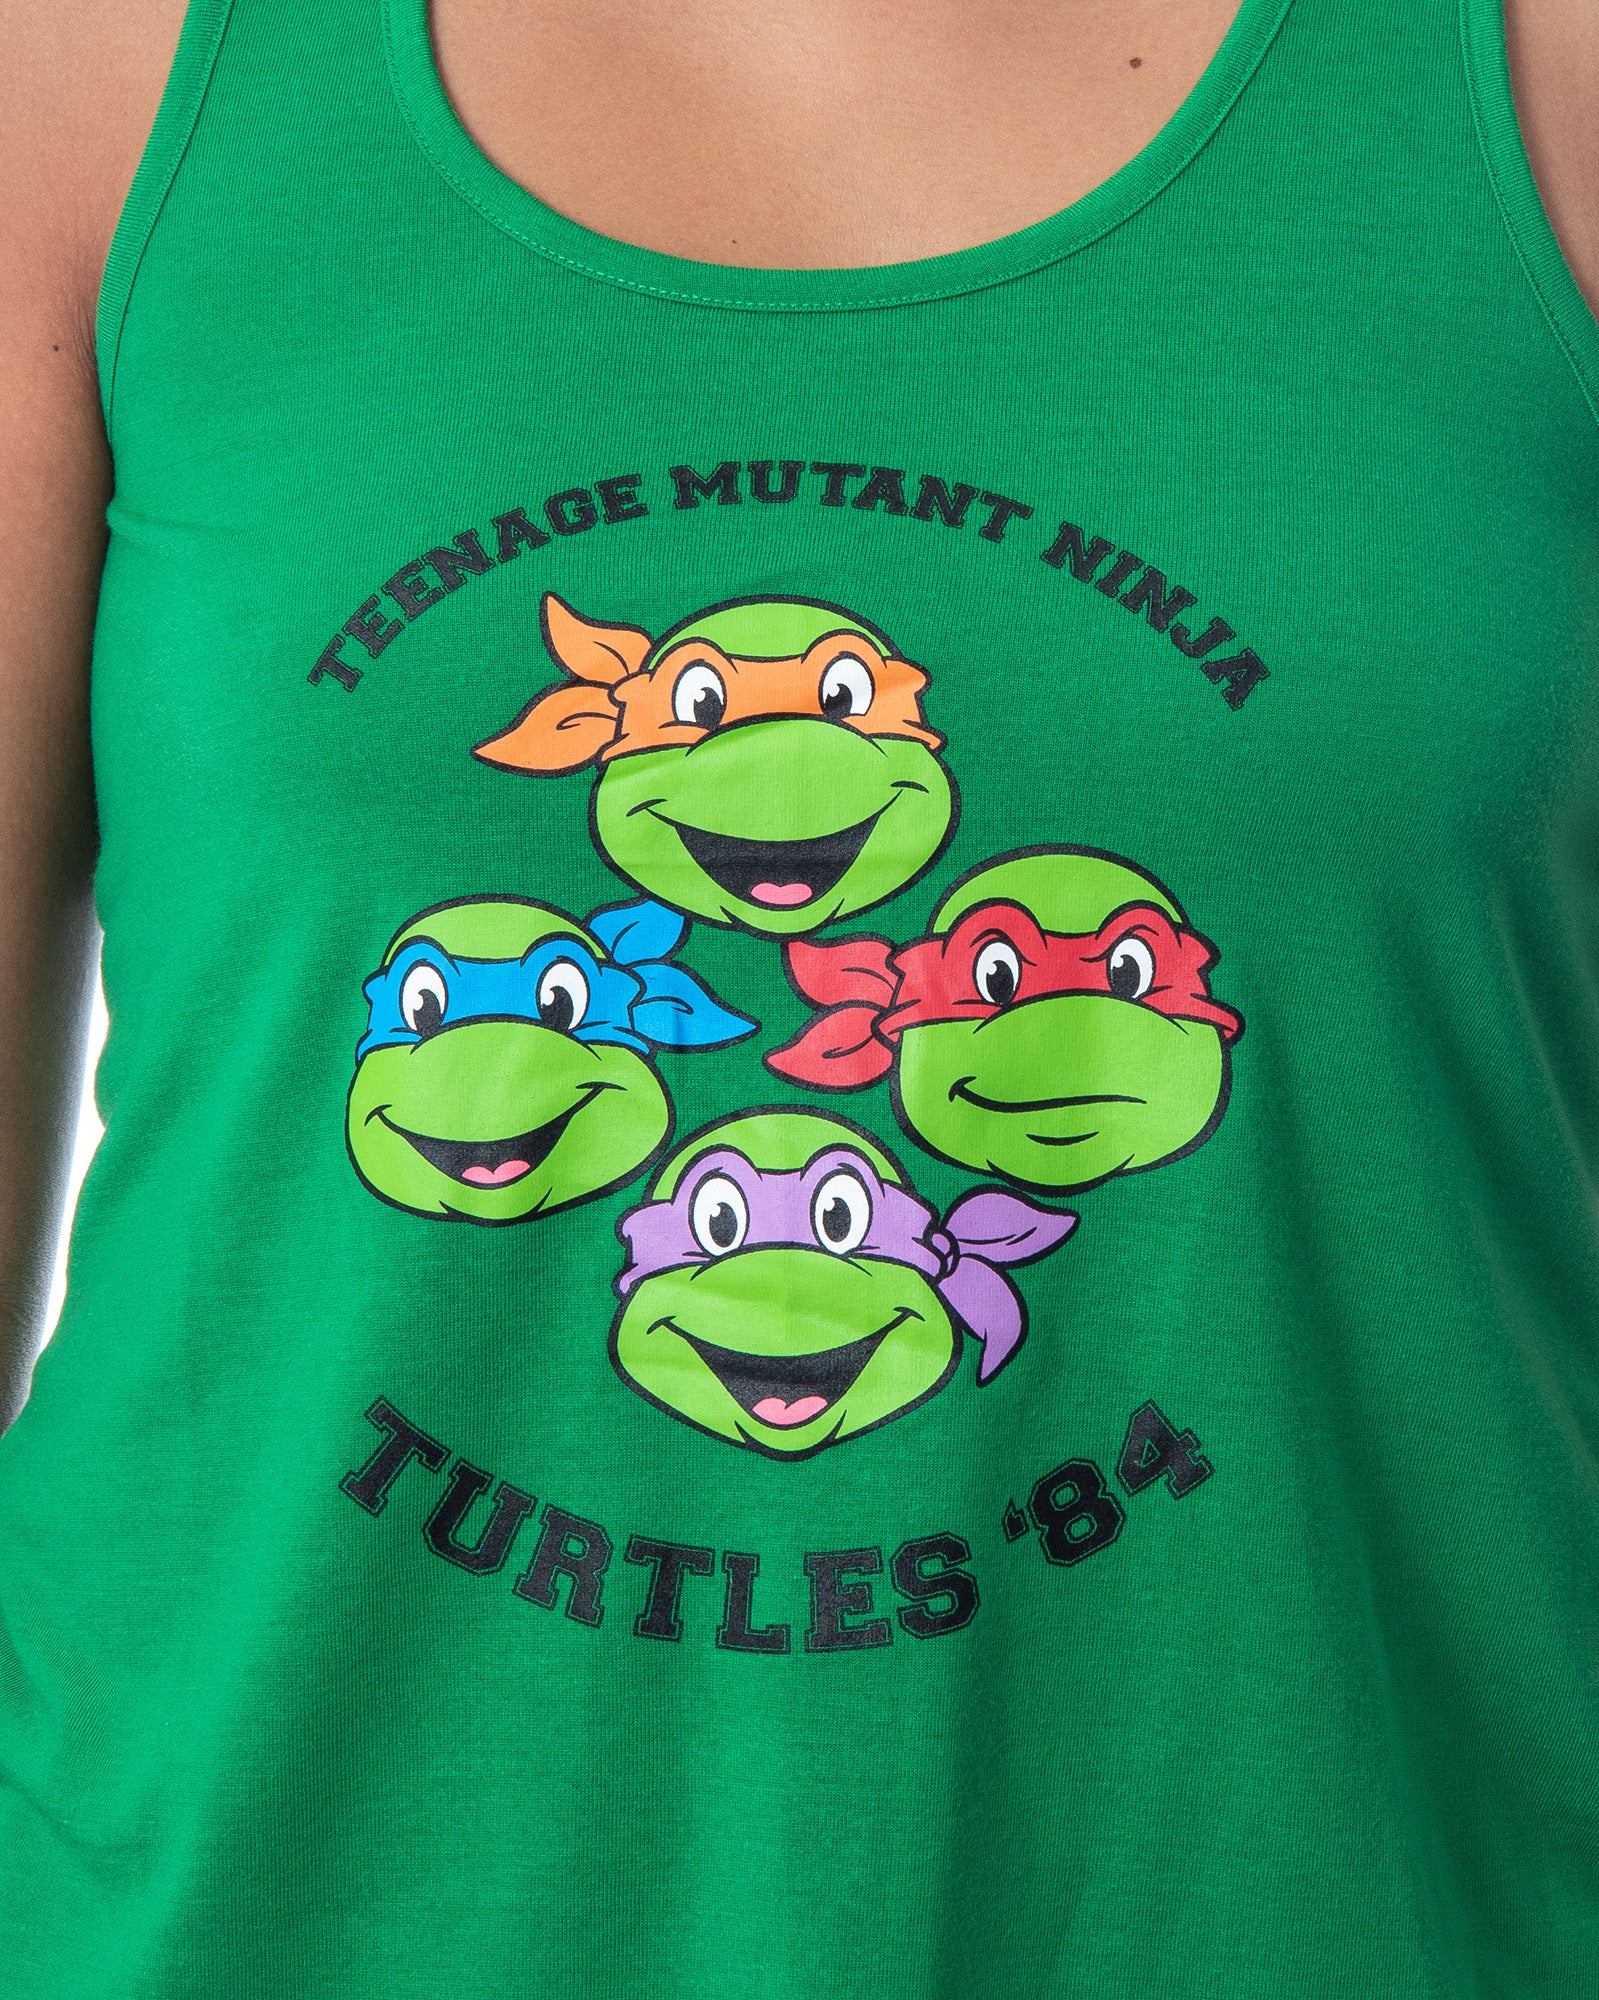 Intimo Nickelodeon Boys' Teenage Mutant Ninja Turtles TMNT Kids Loungewear  Pajama Pants